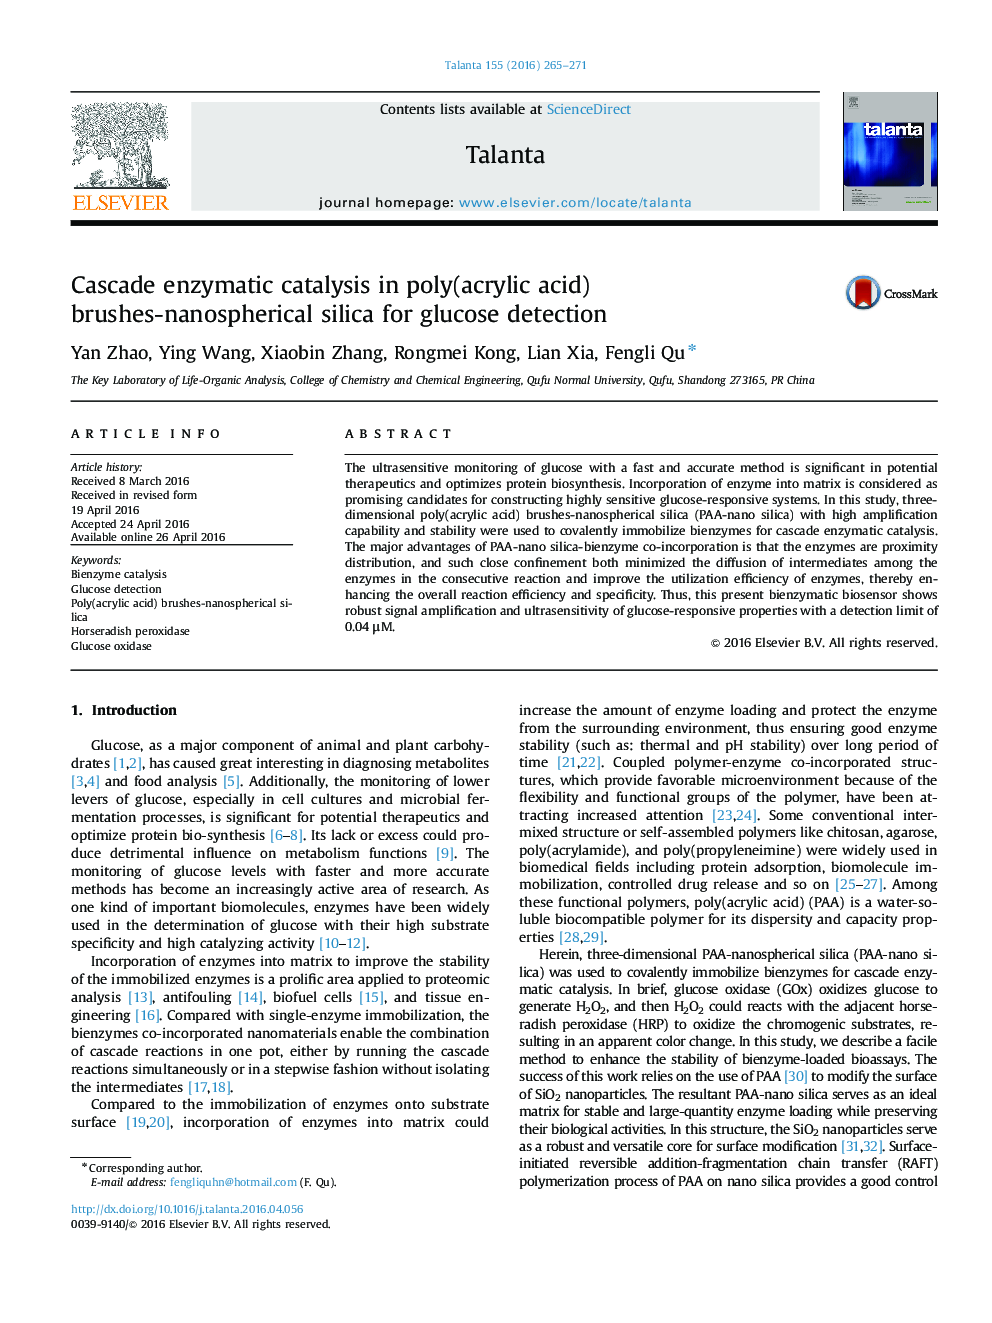 کاتالیزور کاتالیززی آنزیمی در پلی کربنات (اسید اکریلیک)، سیلیکا نانوسایل برای تشخیص گلوکز 